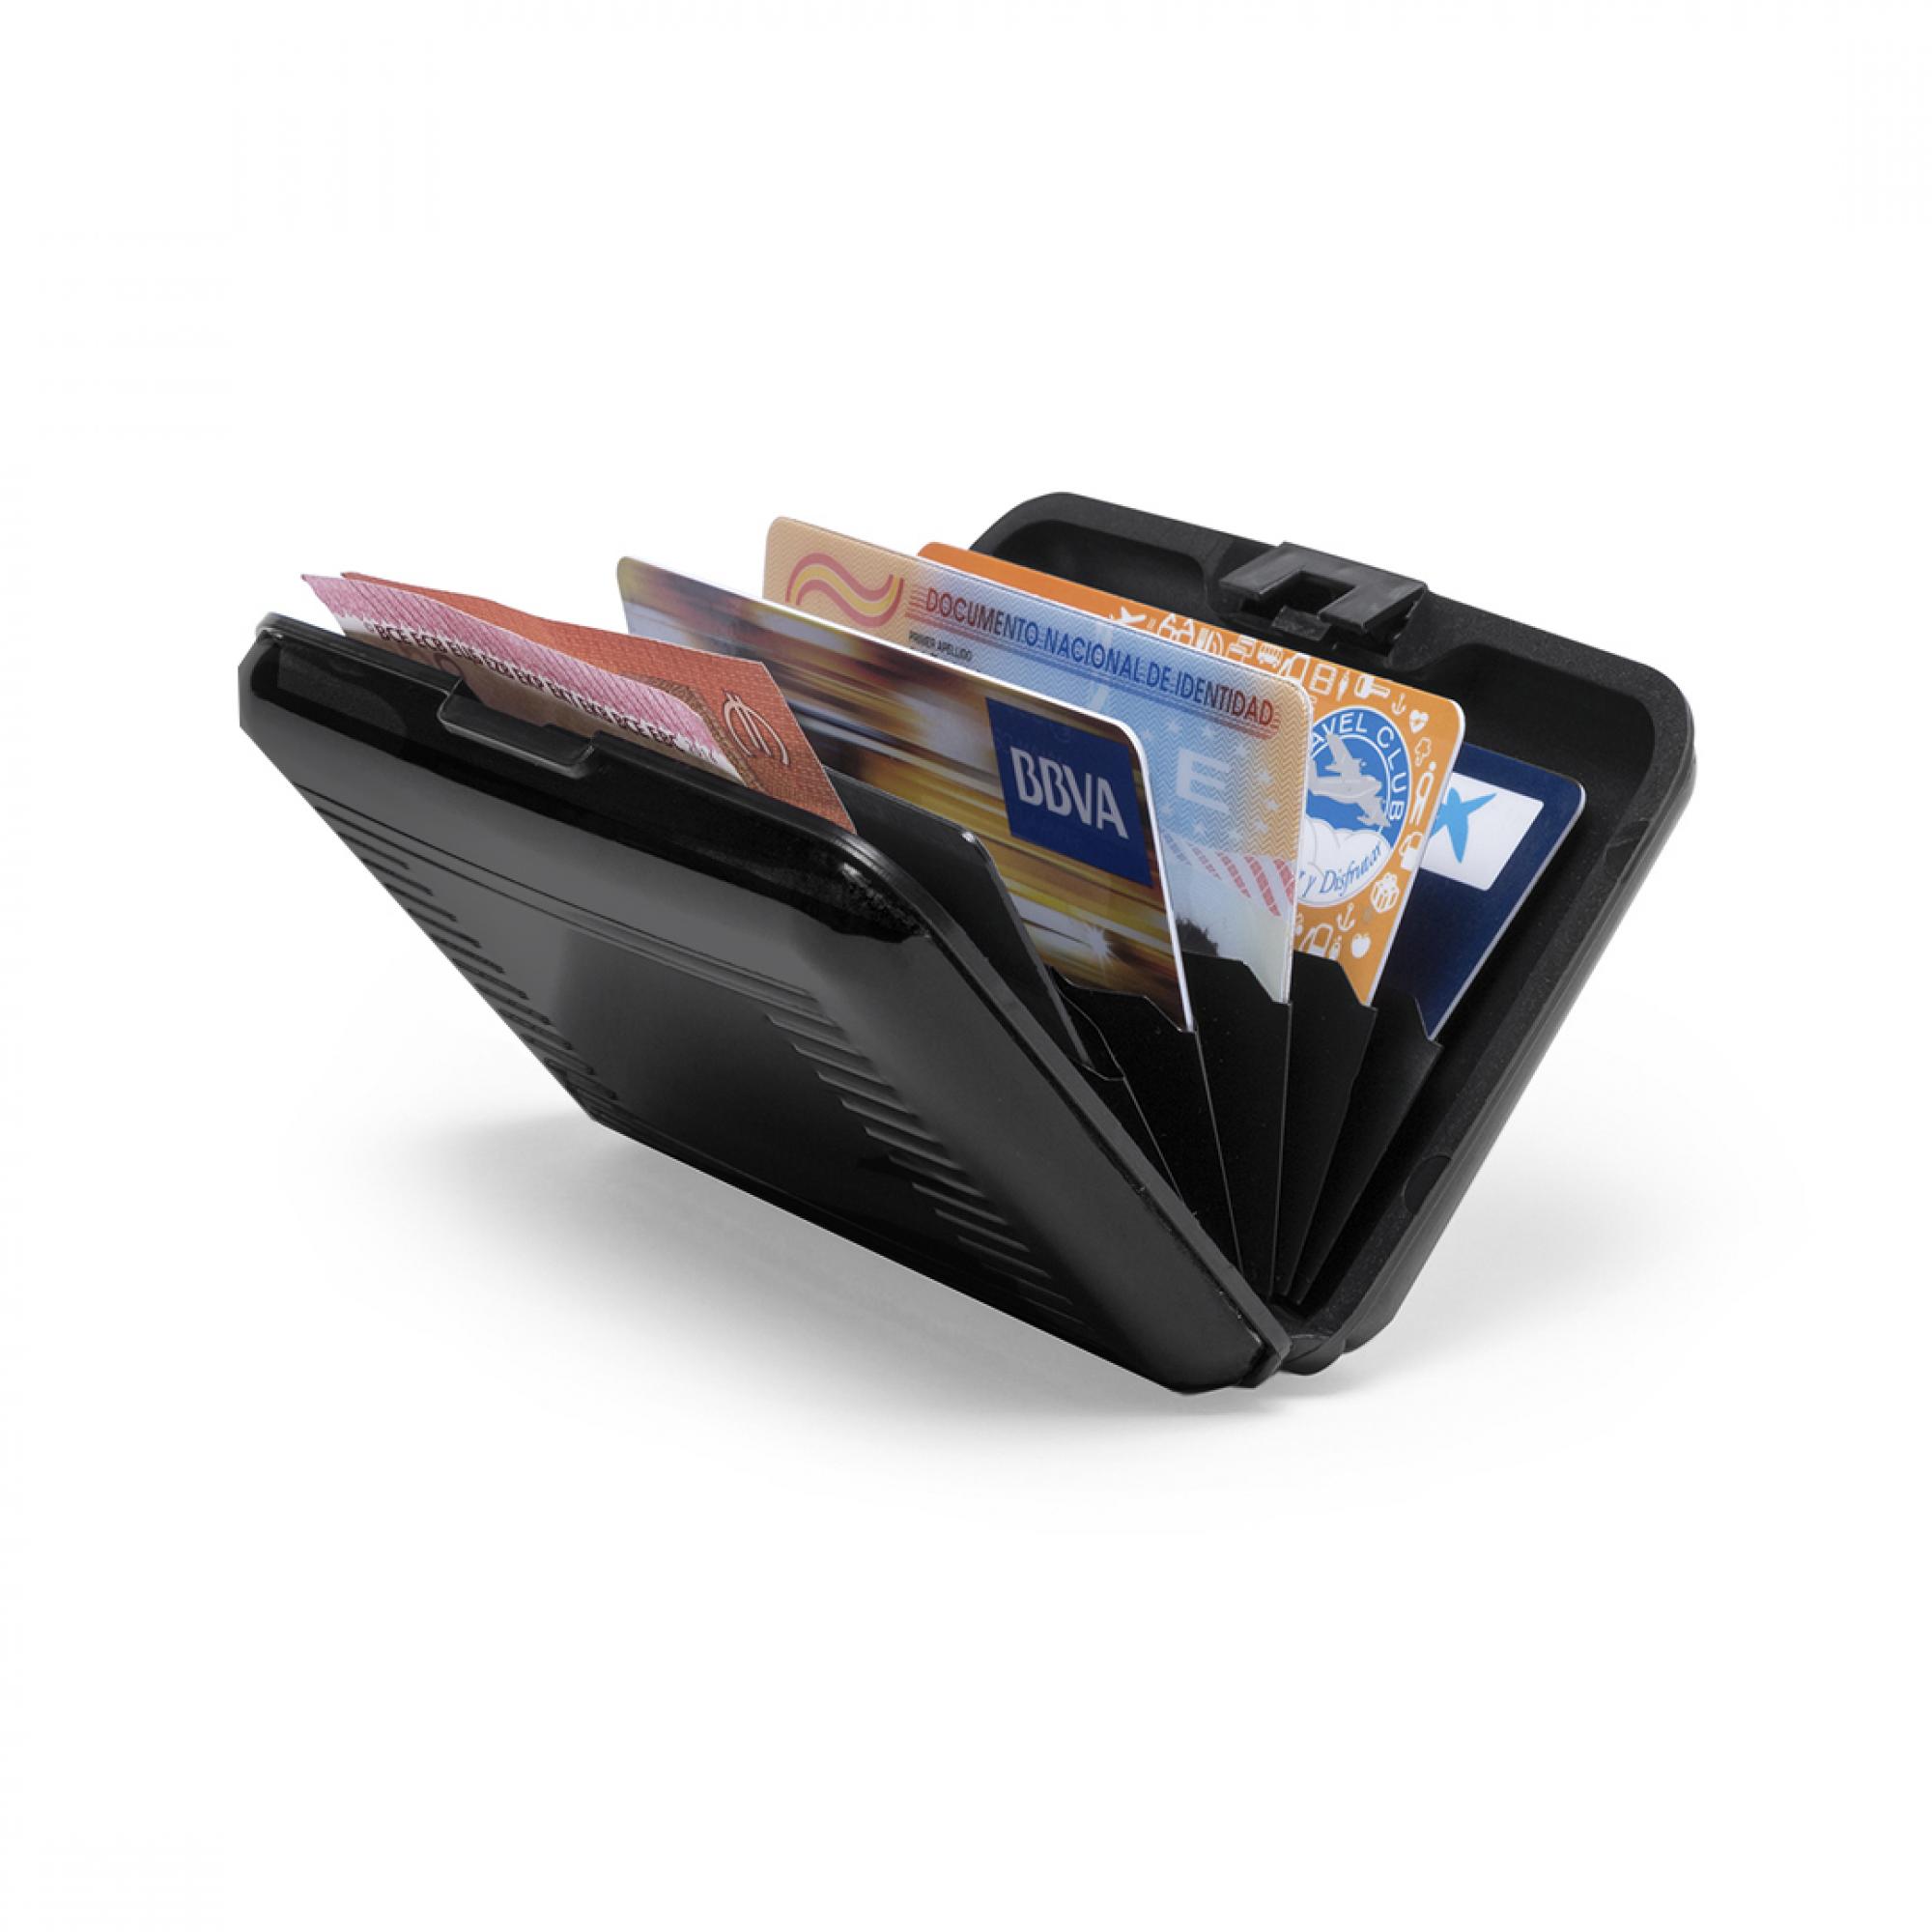 Футляр "Trust" для банковских карт и визиток с RFID - защитой, цвет черный, фото 2